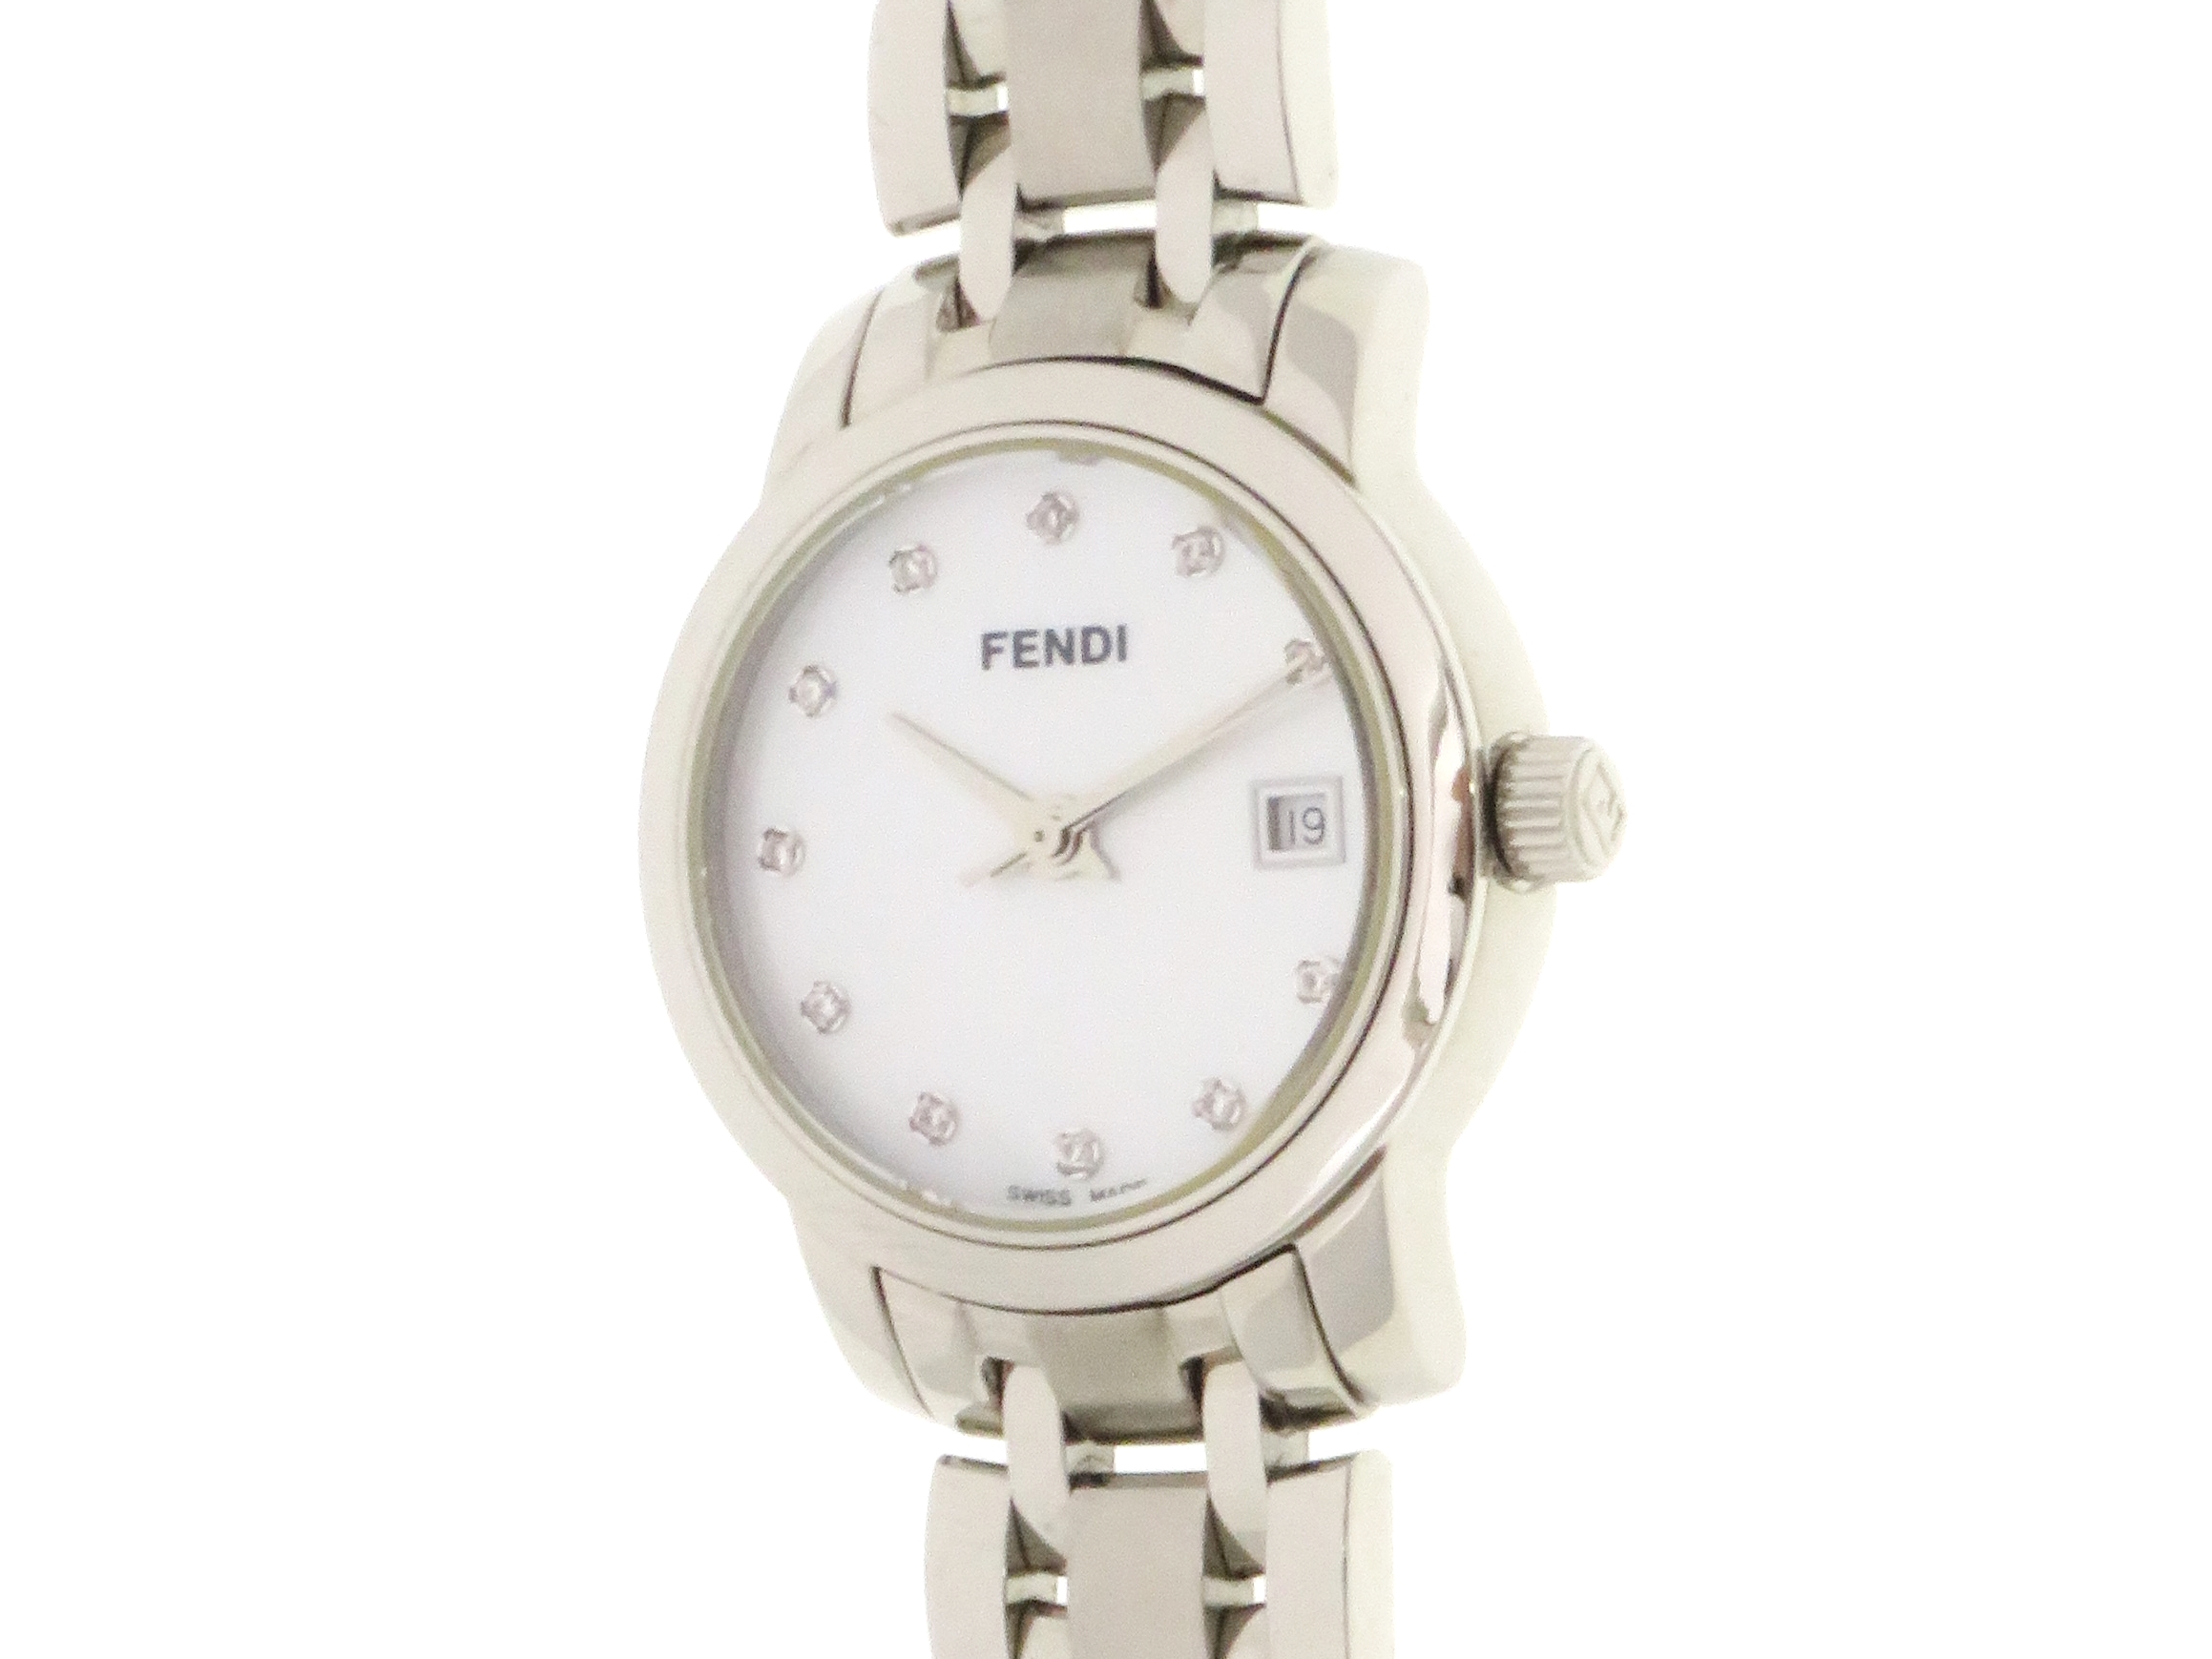 FENDI フェンディ 時計 ニュークラシコ 059-2100L ステンレス クォーツ